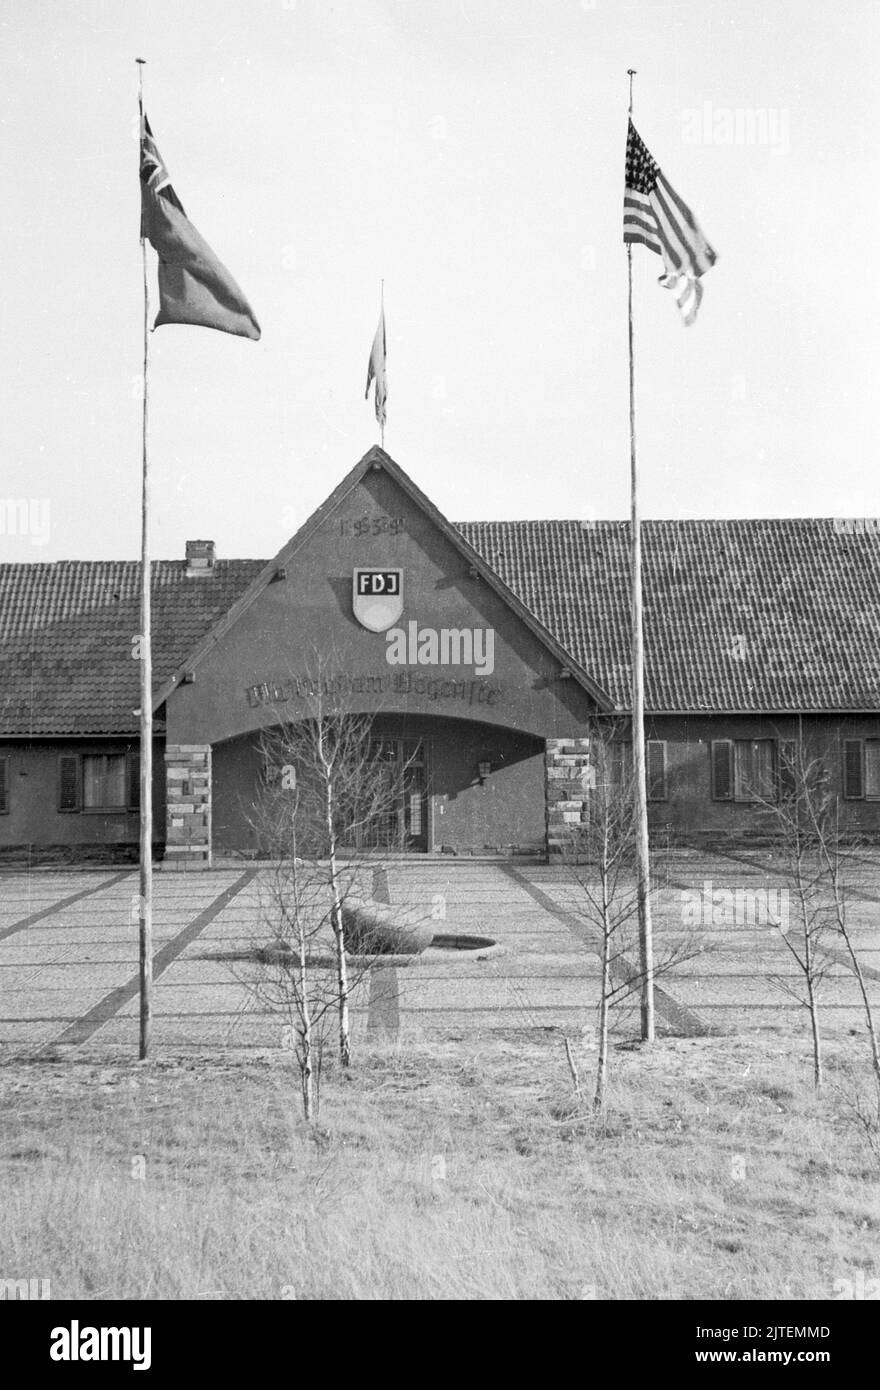 Der Landsitz und die Villa vom früheren Propagandaminister Joseph Goebbels, das Gelände Bogensee bei Wandlitz, wird nun als Hochschule der FDJ genutzt, hier noch mit alliierten Fahnen, Nähe Berlin, Deutschland 1947. Foto Stock